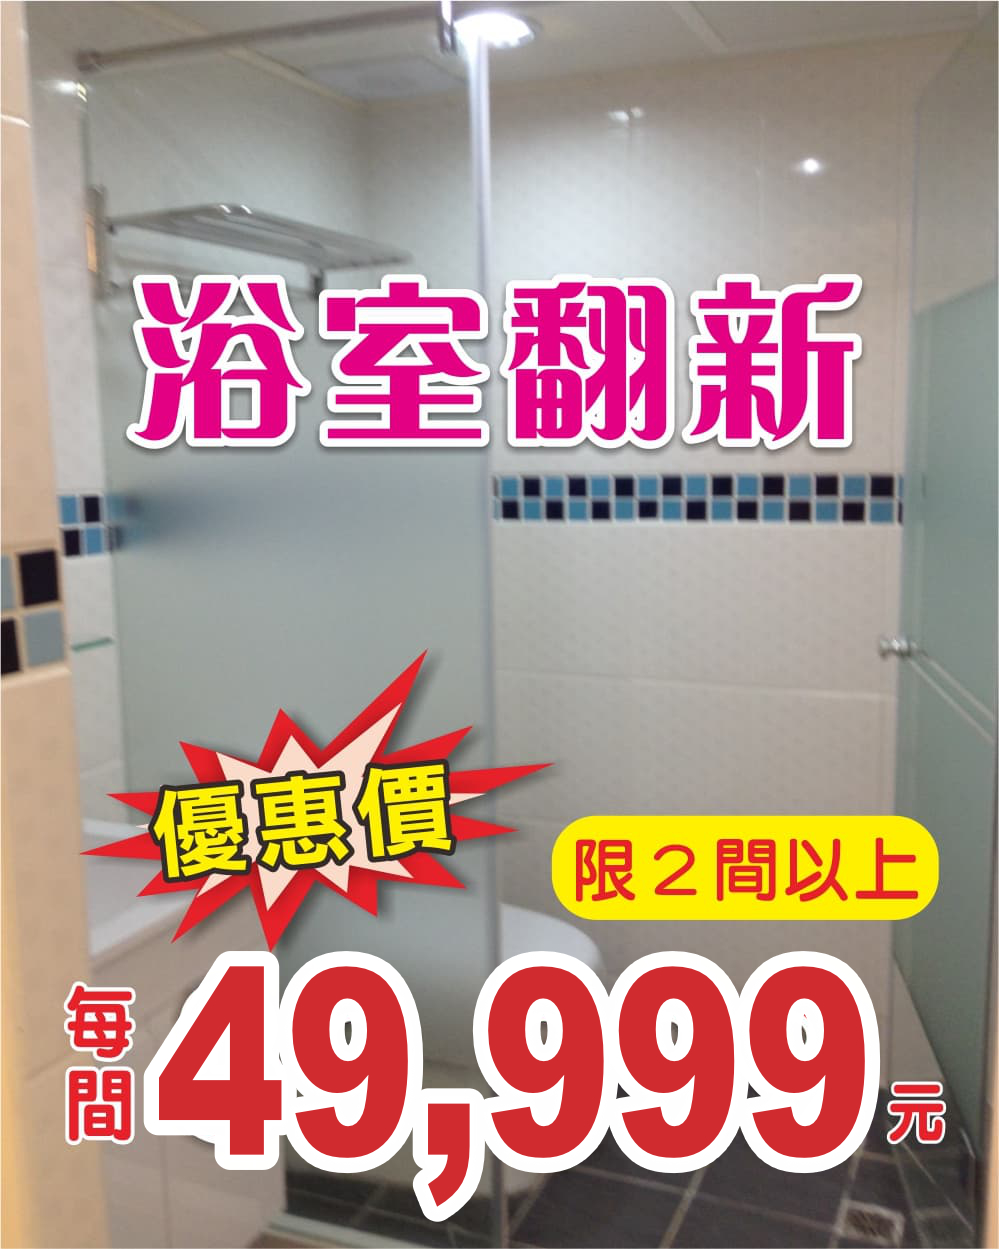 浴室翻新特價專案每間39999元